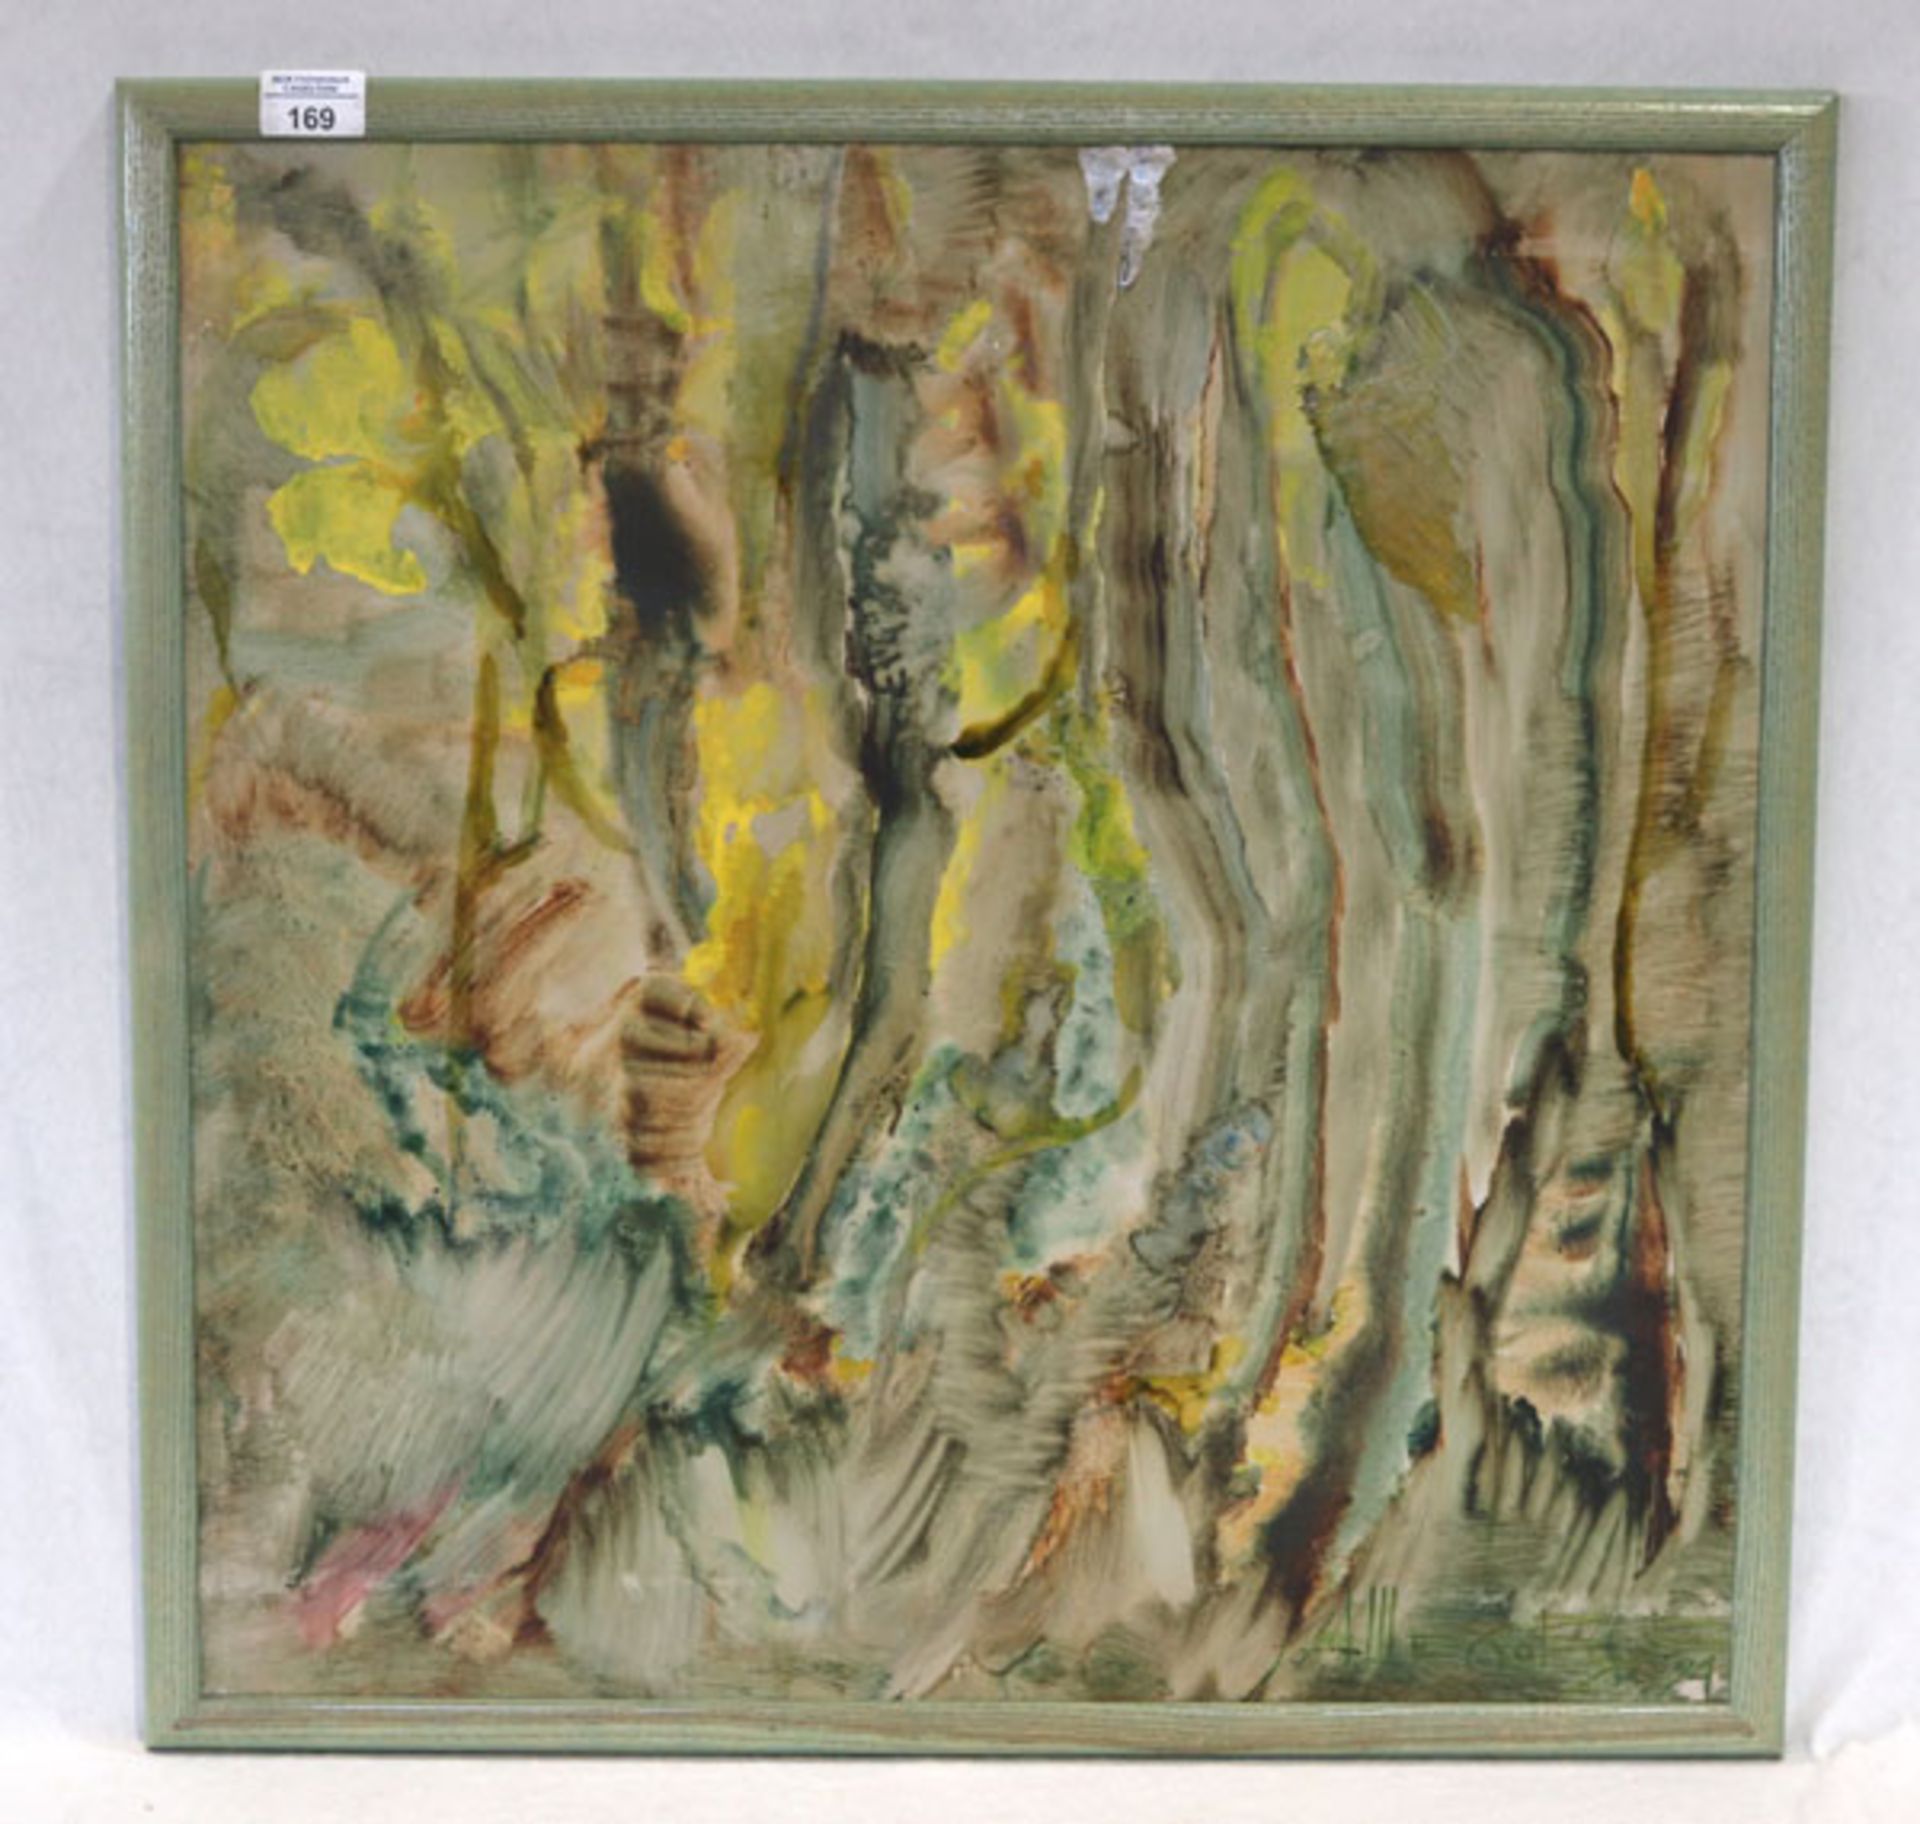 Gemälde Mischtechnik/Hartfaser 'Abstrakte Sonnenblumen', unleserlich signiert, datiert 94,